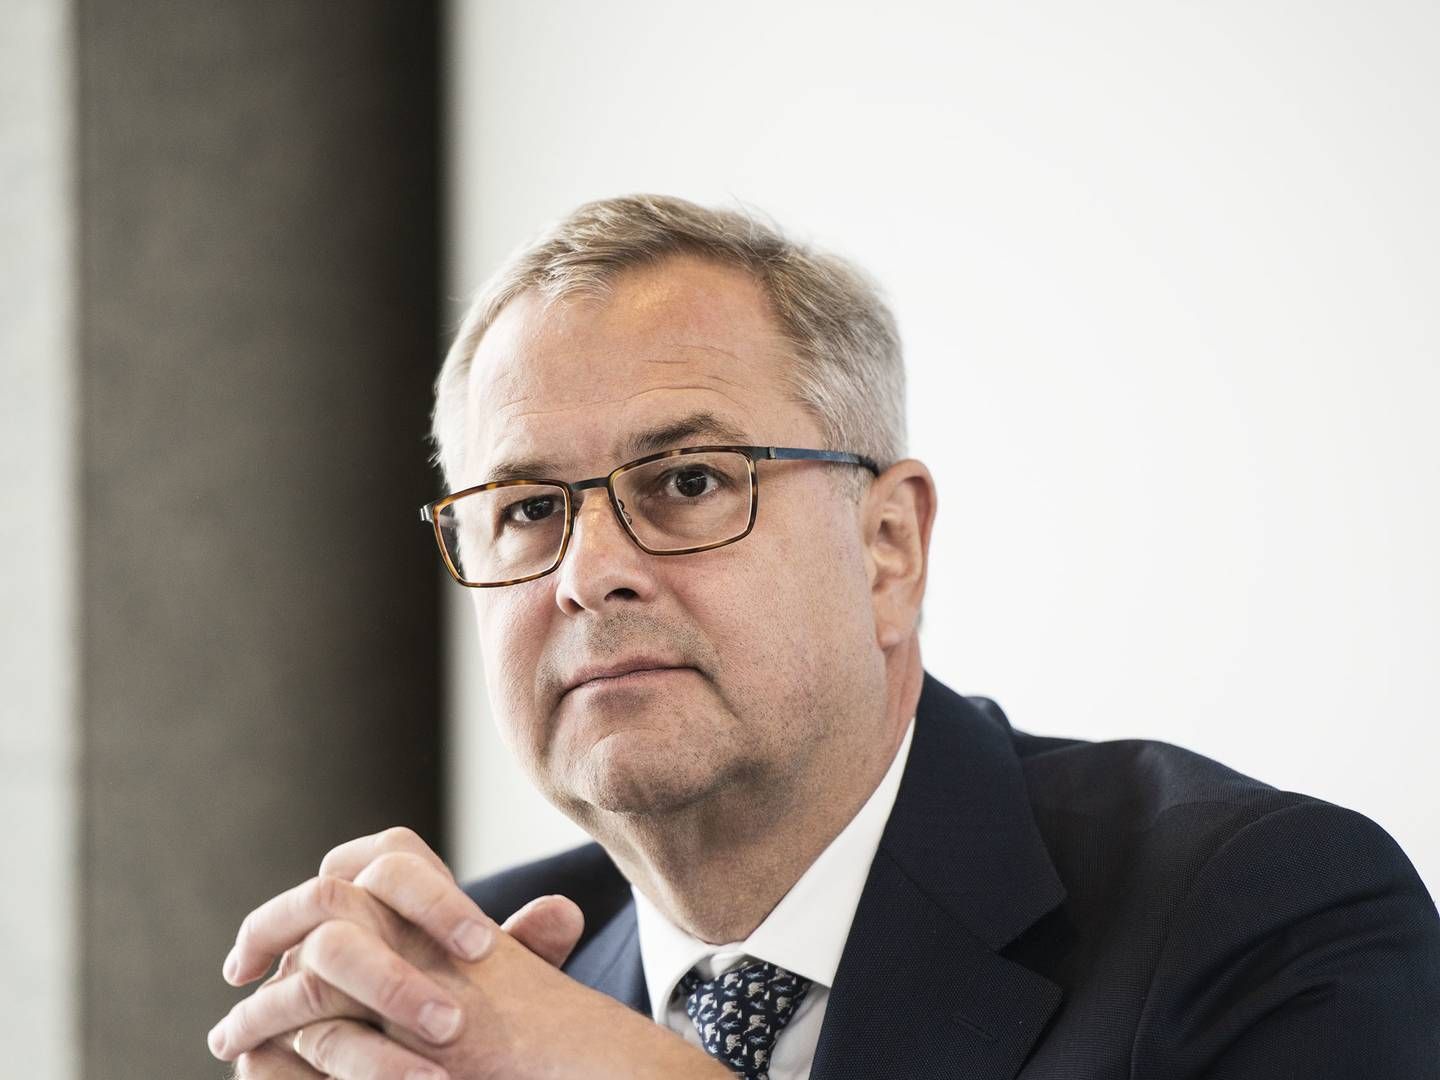 Maersks topchef Søren Skou har allerede indfriet de finansielle mål på logistik-området, men det skal testes i et normaliseret marked, mener Sydbank. | Foto: Casper Holmenlund Christensen/Jyllands-Posten/Ritzau Scanpix